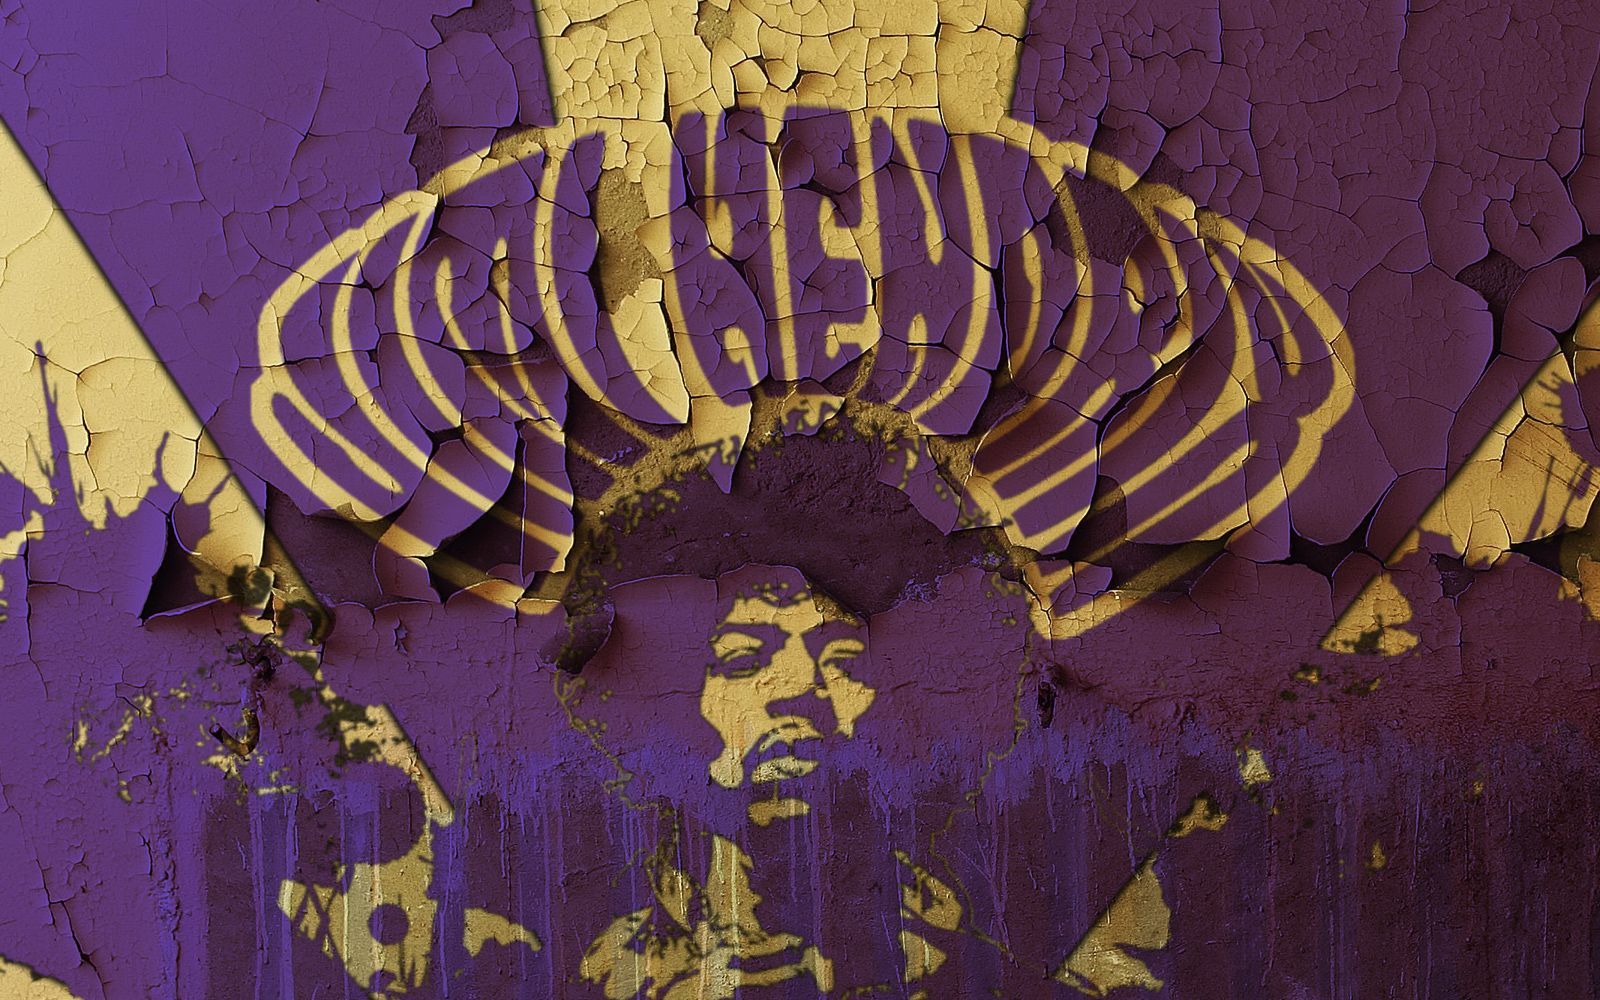 Jimi Hendrix HD Wallpaper 1920x1080 ID40205